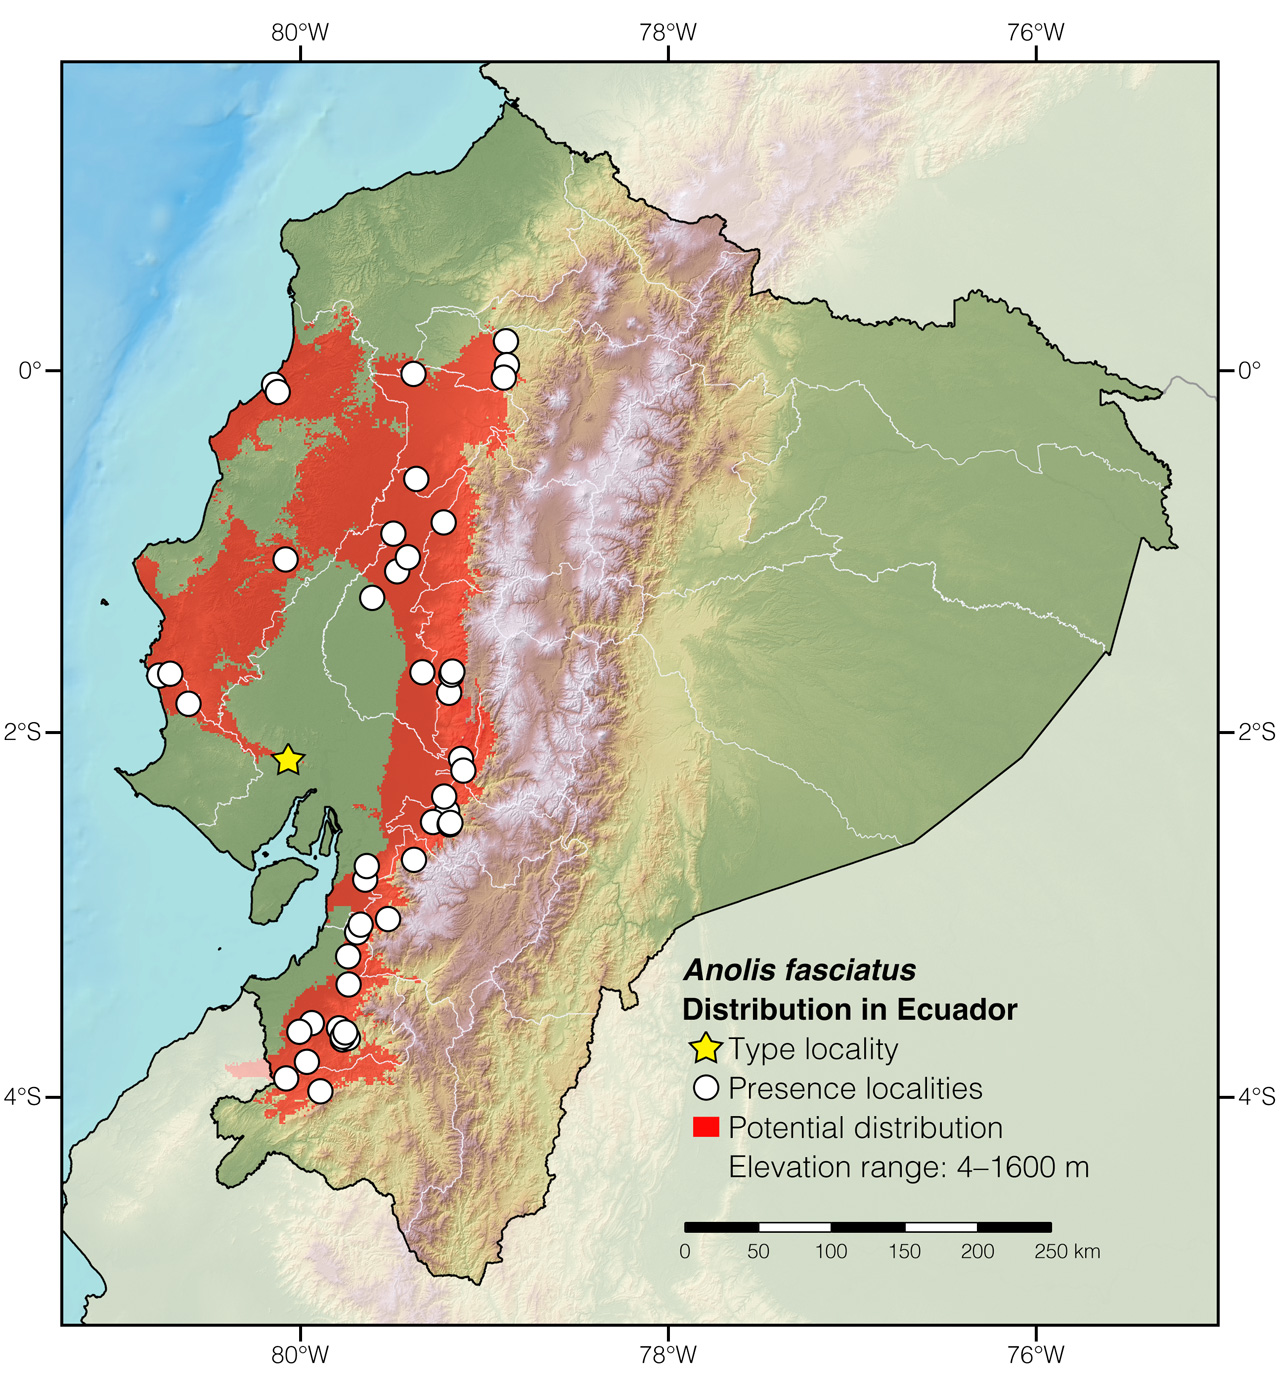 Distribution of Anolis fasciatus in Ecuador